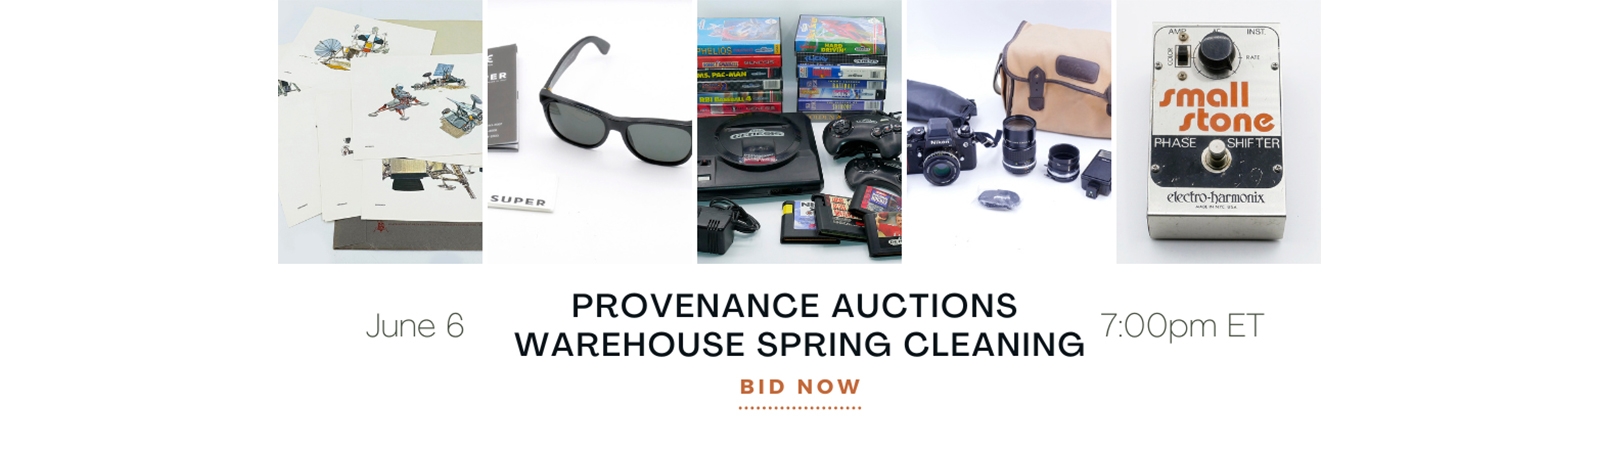 Provenance Auctions  | AuctionNinja